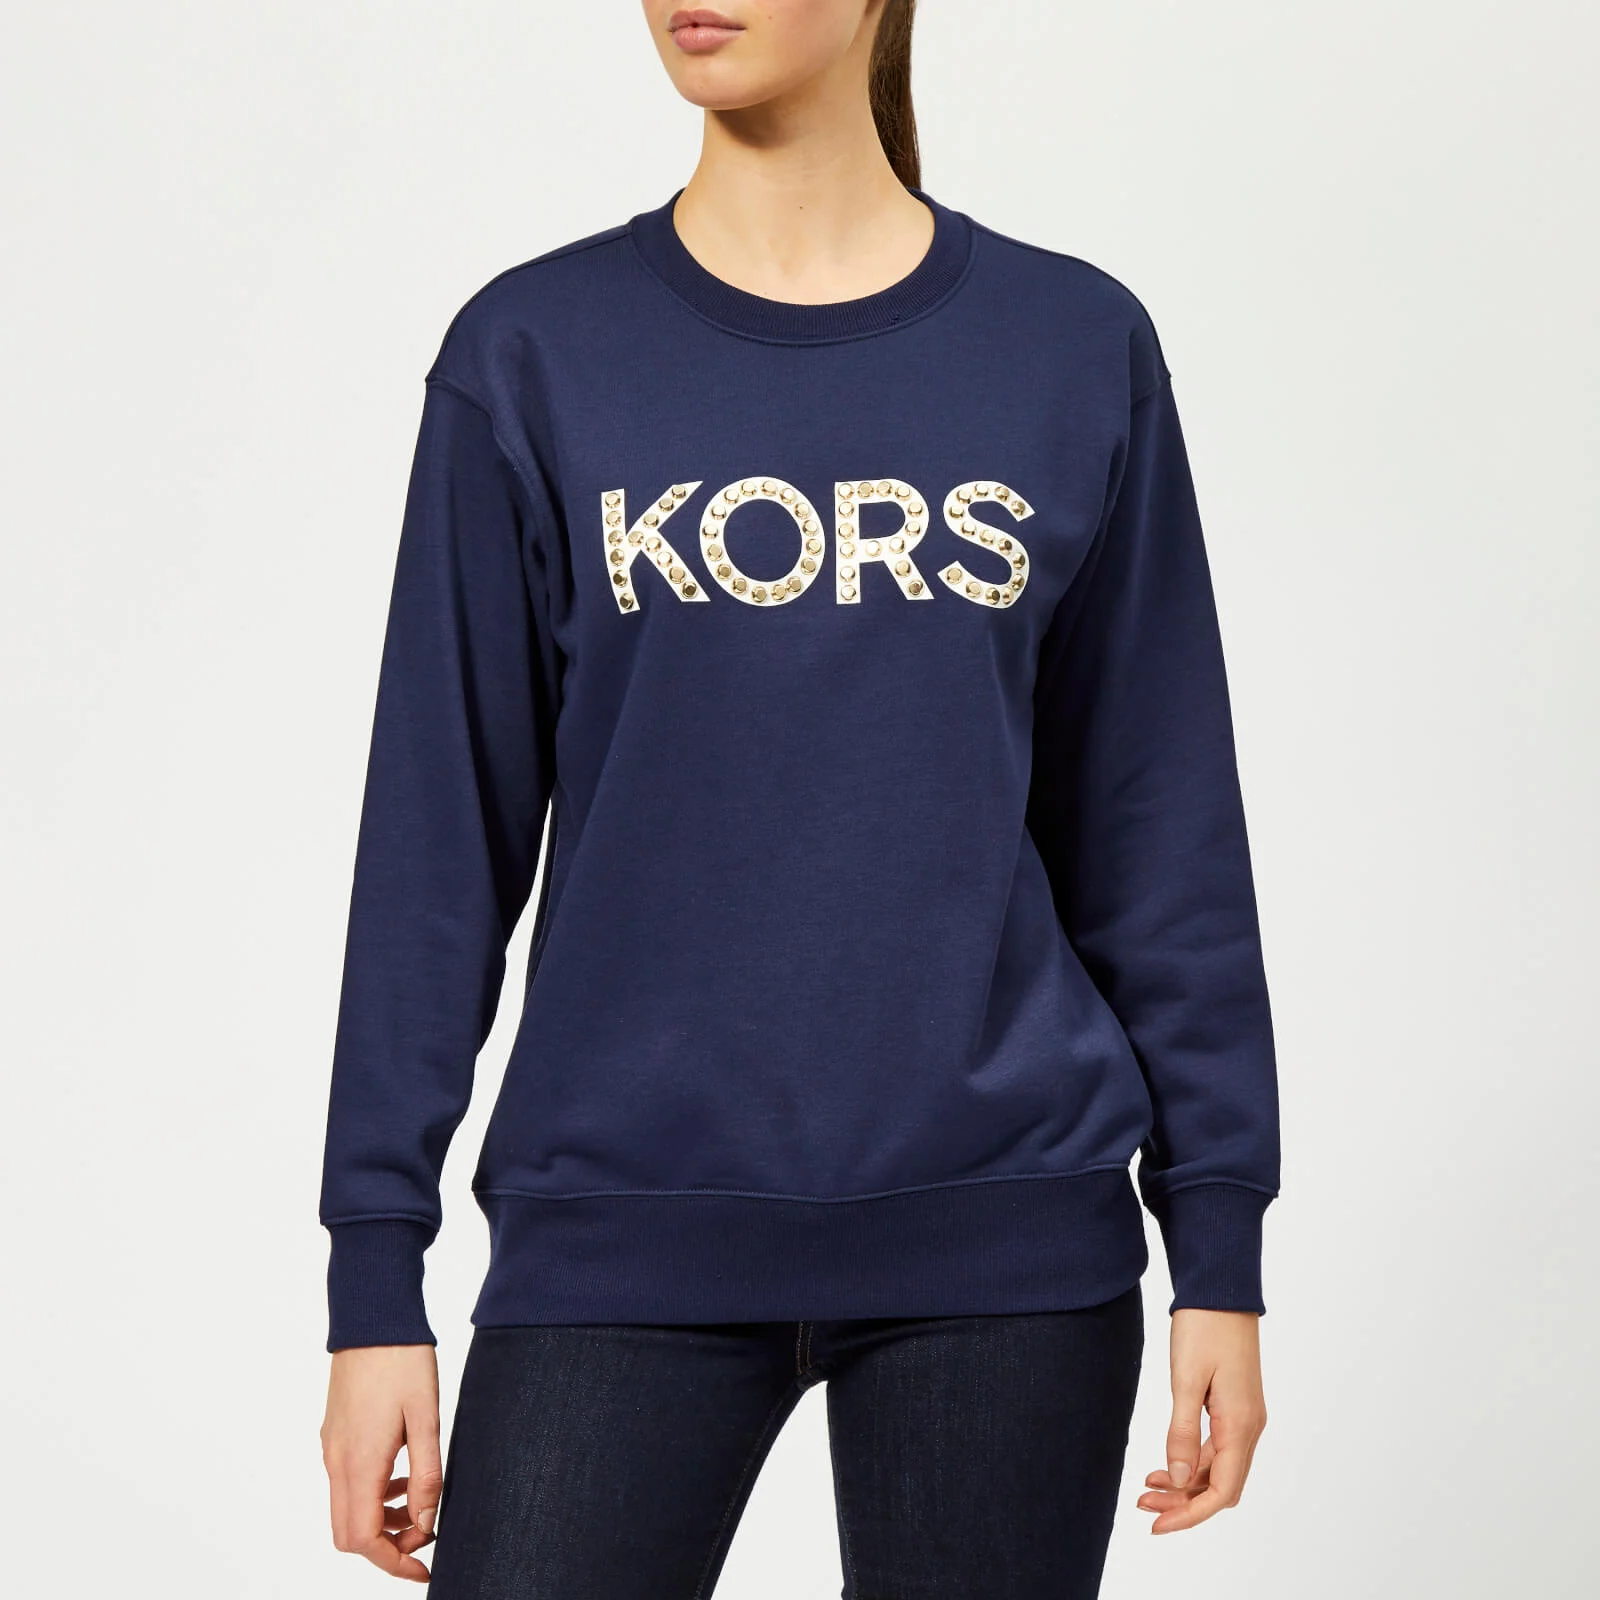 MICHAEL MICHAEL KORS Women's Kors Stud Sweatshirt - True Navy Image 1